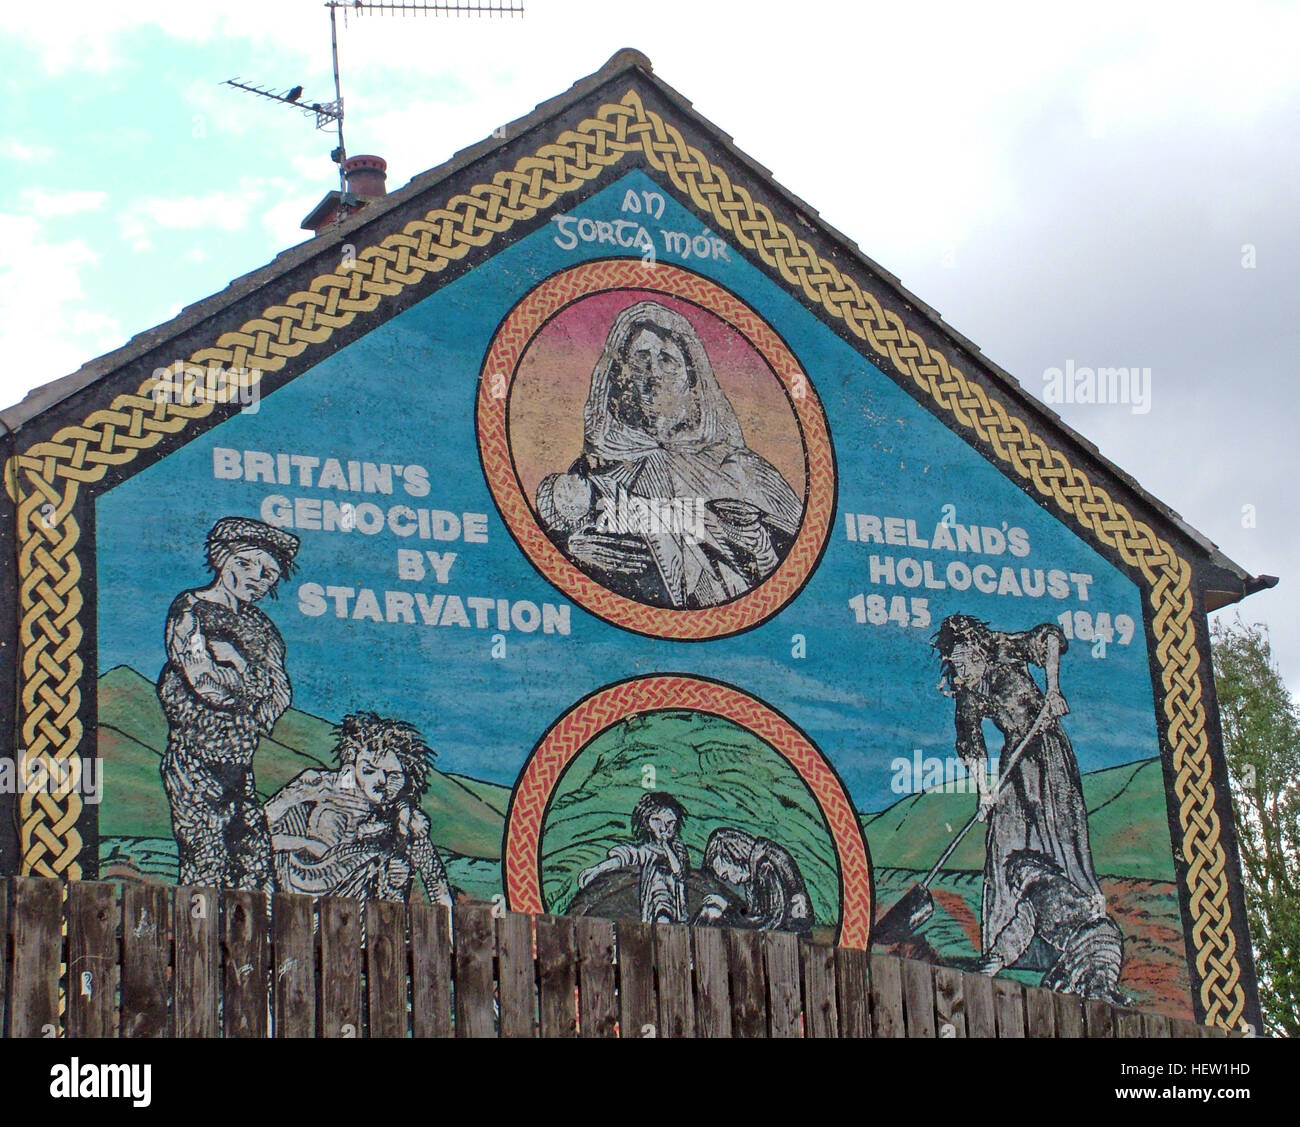 Belfast Falls Rd Mural-Britains républicaine génocide par la famine, sur l'Holocauste Irlande immobiliers logement de pignon Banque D'Images